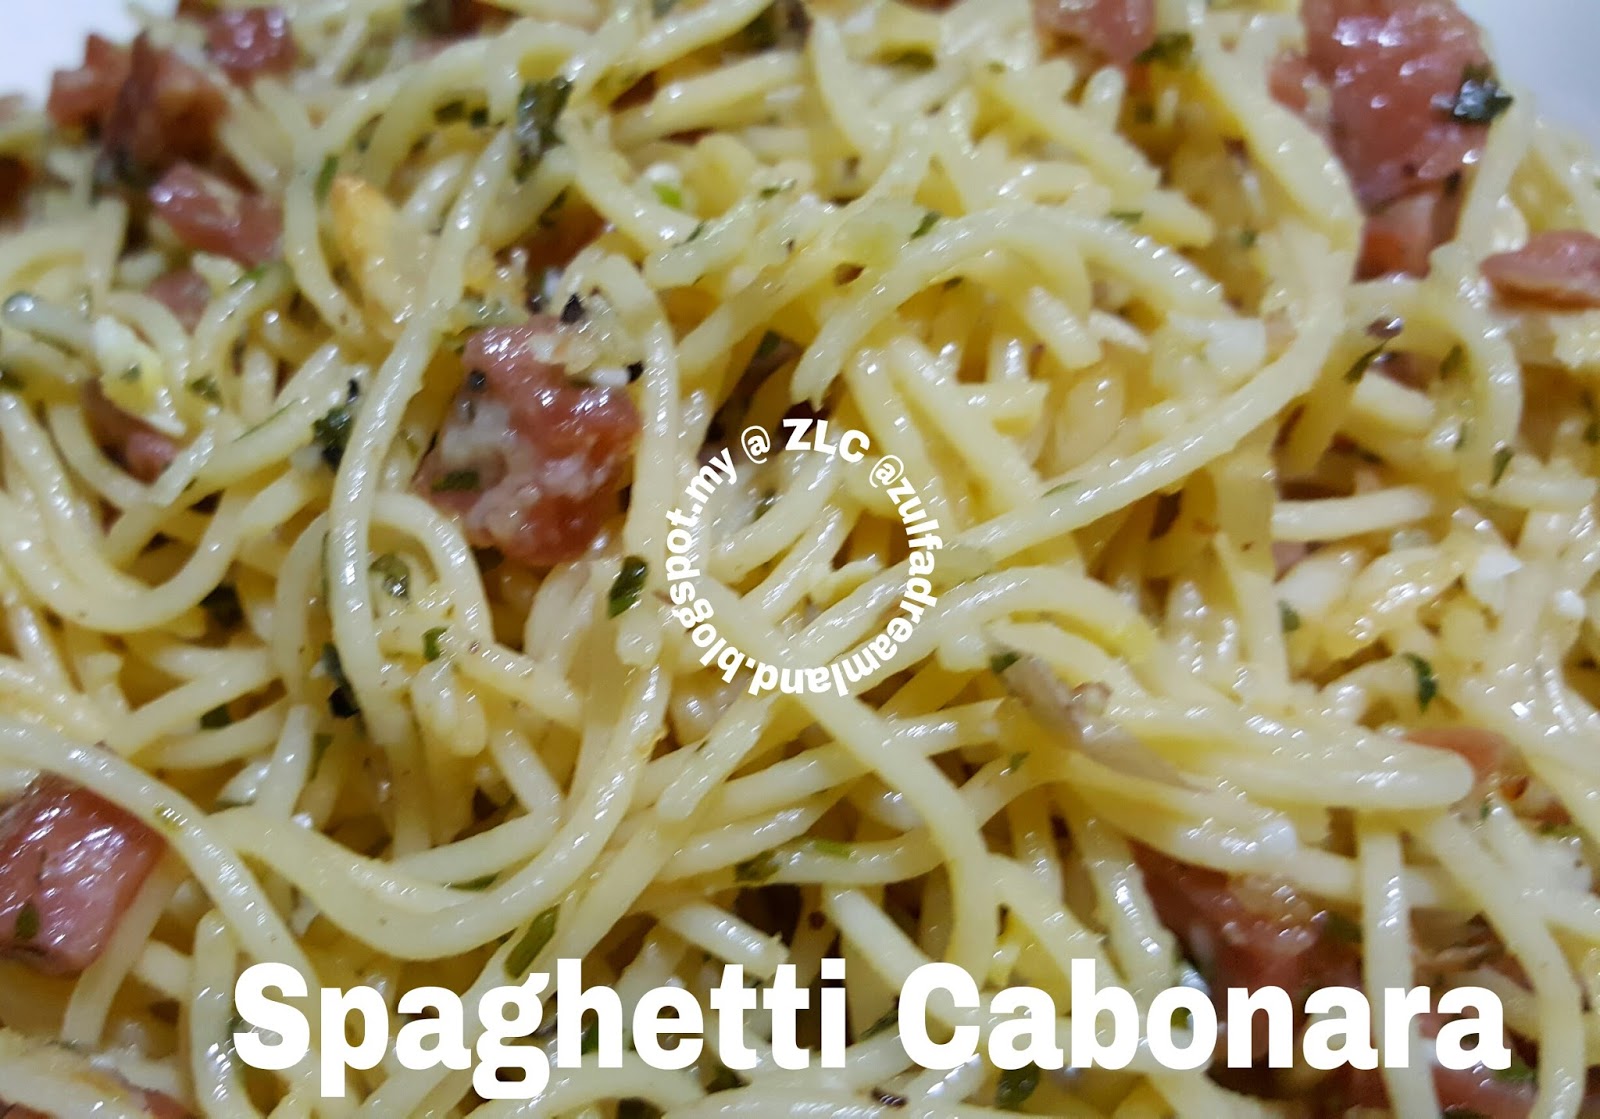 Resepi Spaghetti Carbonara Yang Mudah Dan Sedap - Recipes 